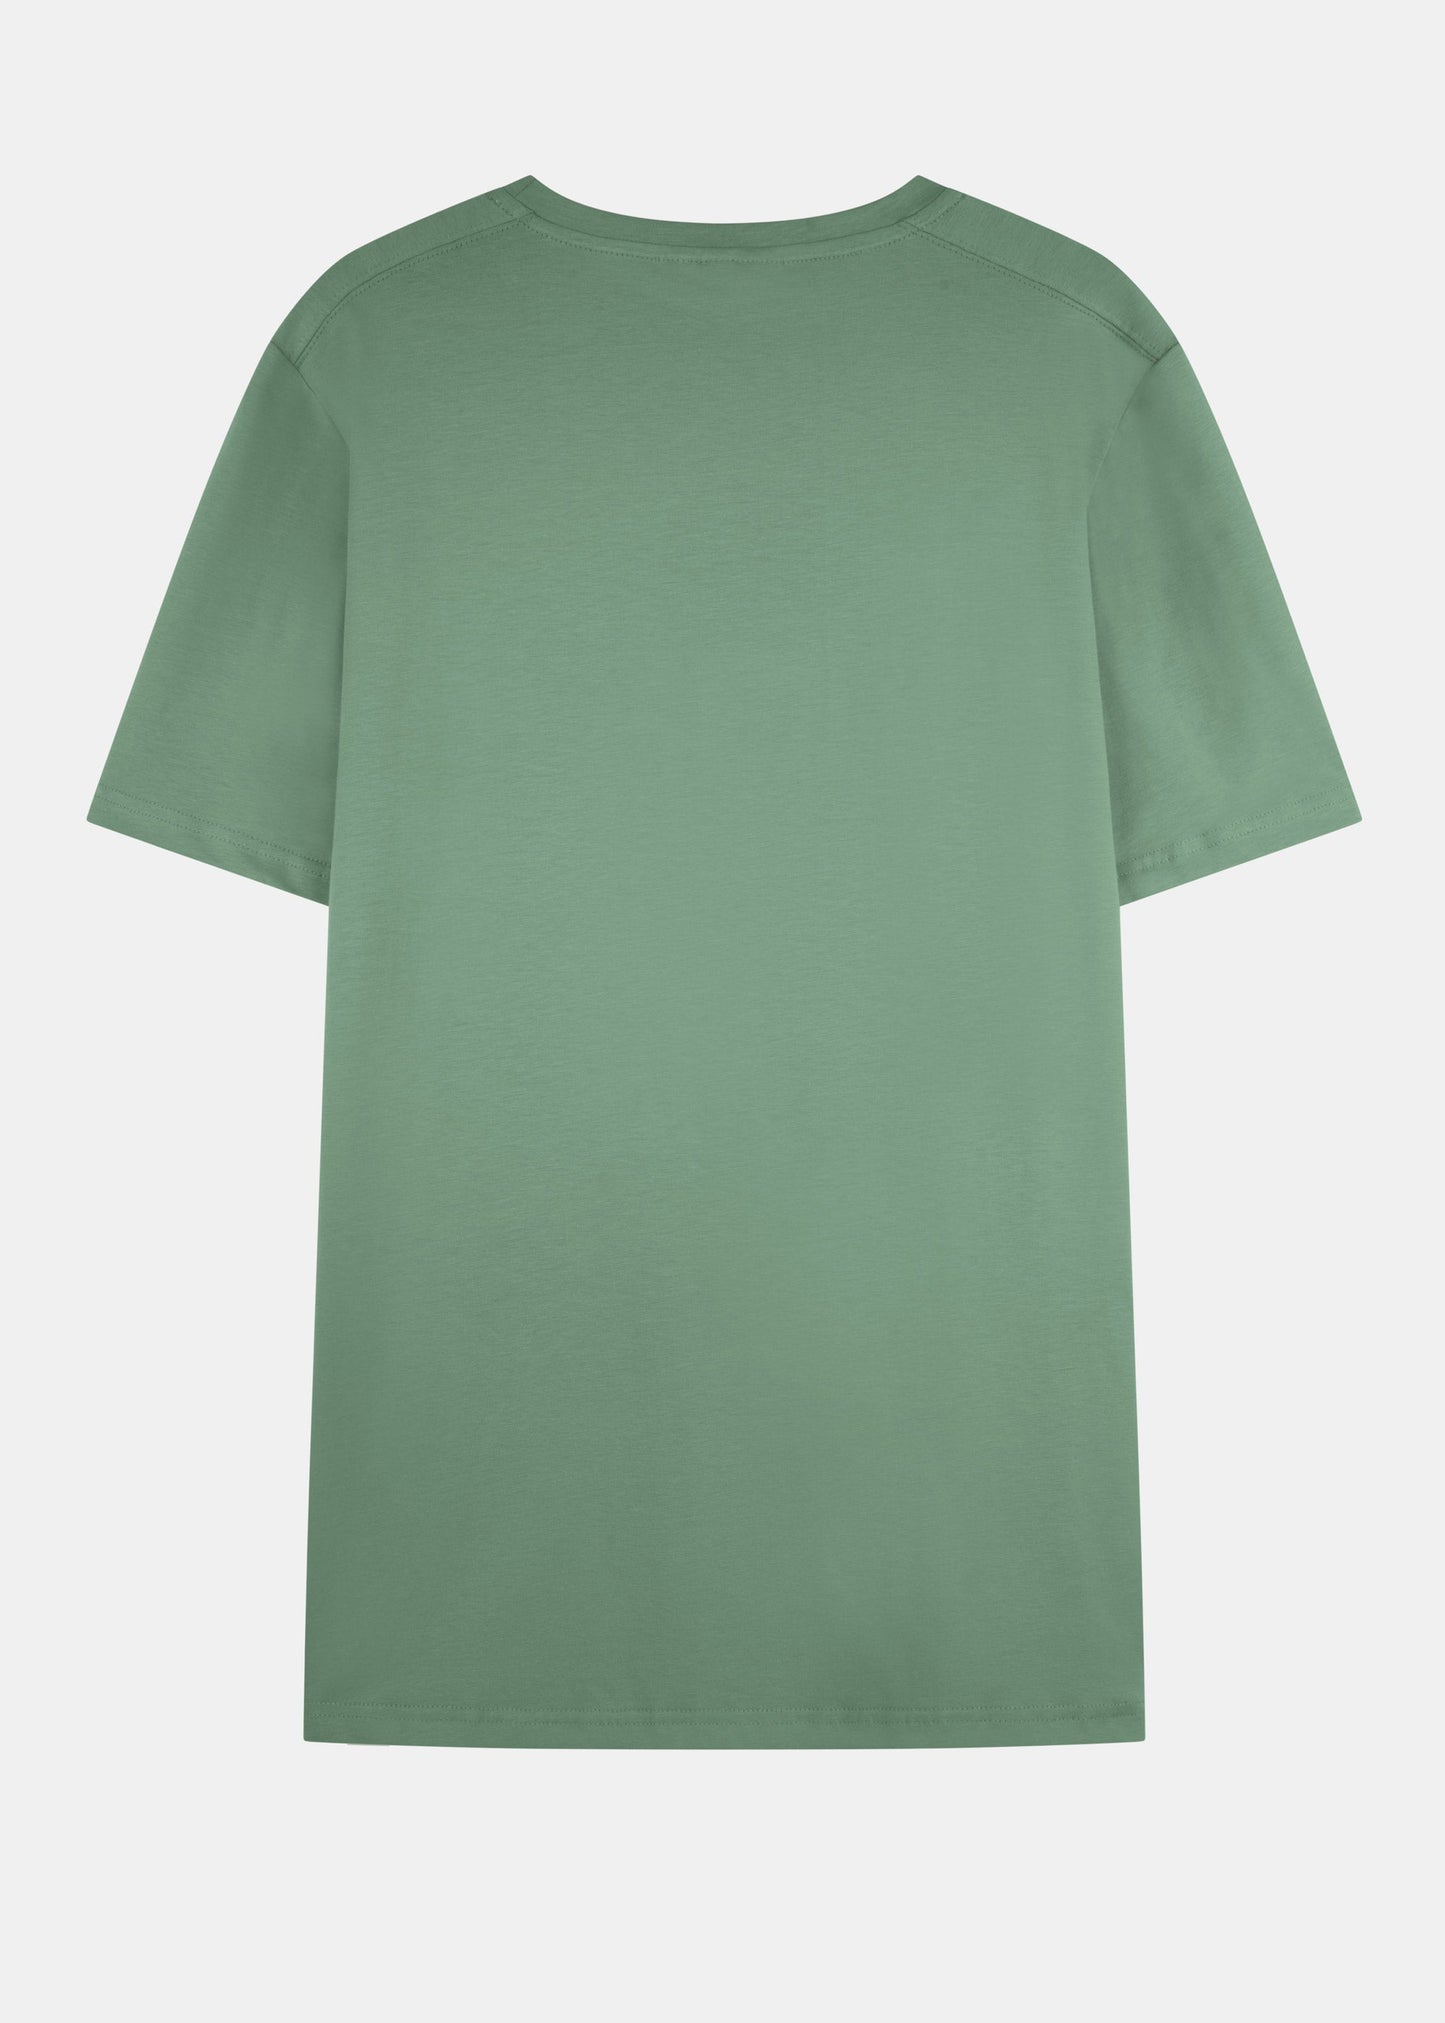 Oversized-Shirt NOLDI LaurelOak